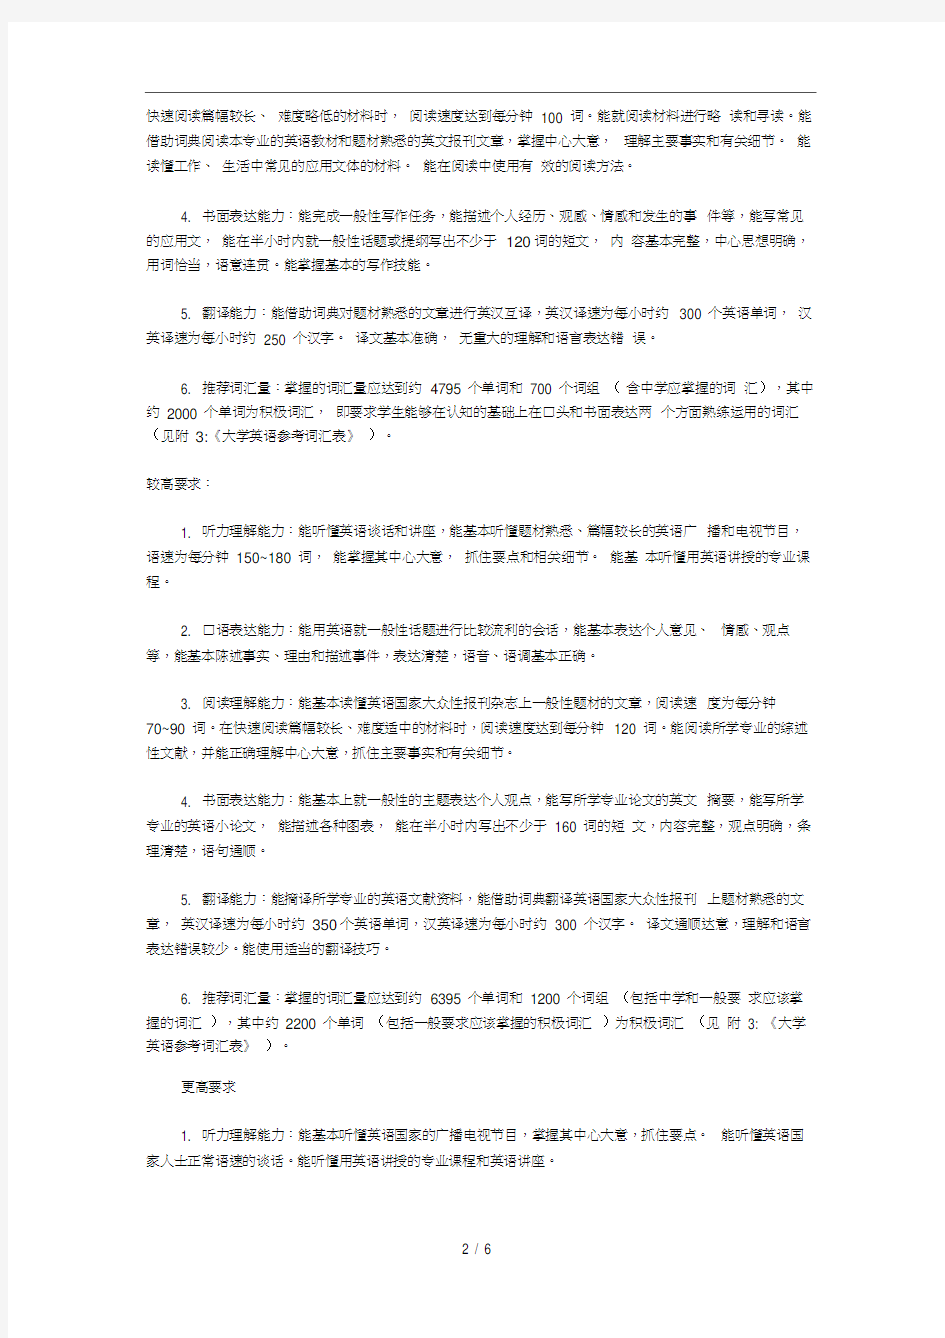 大学英语课程教学要求中文版